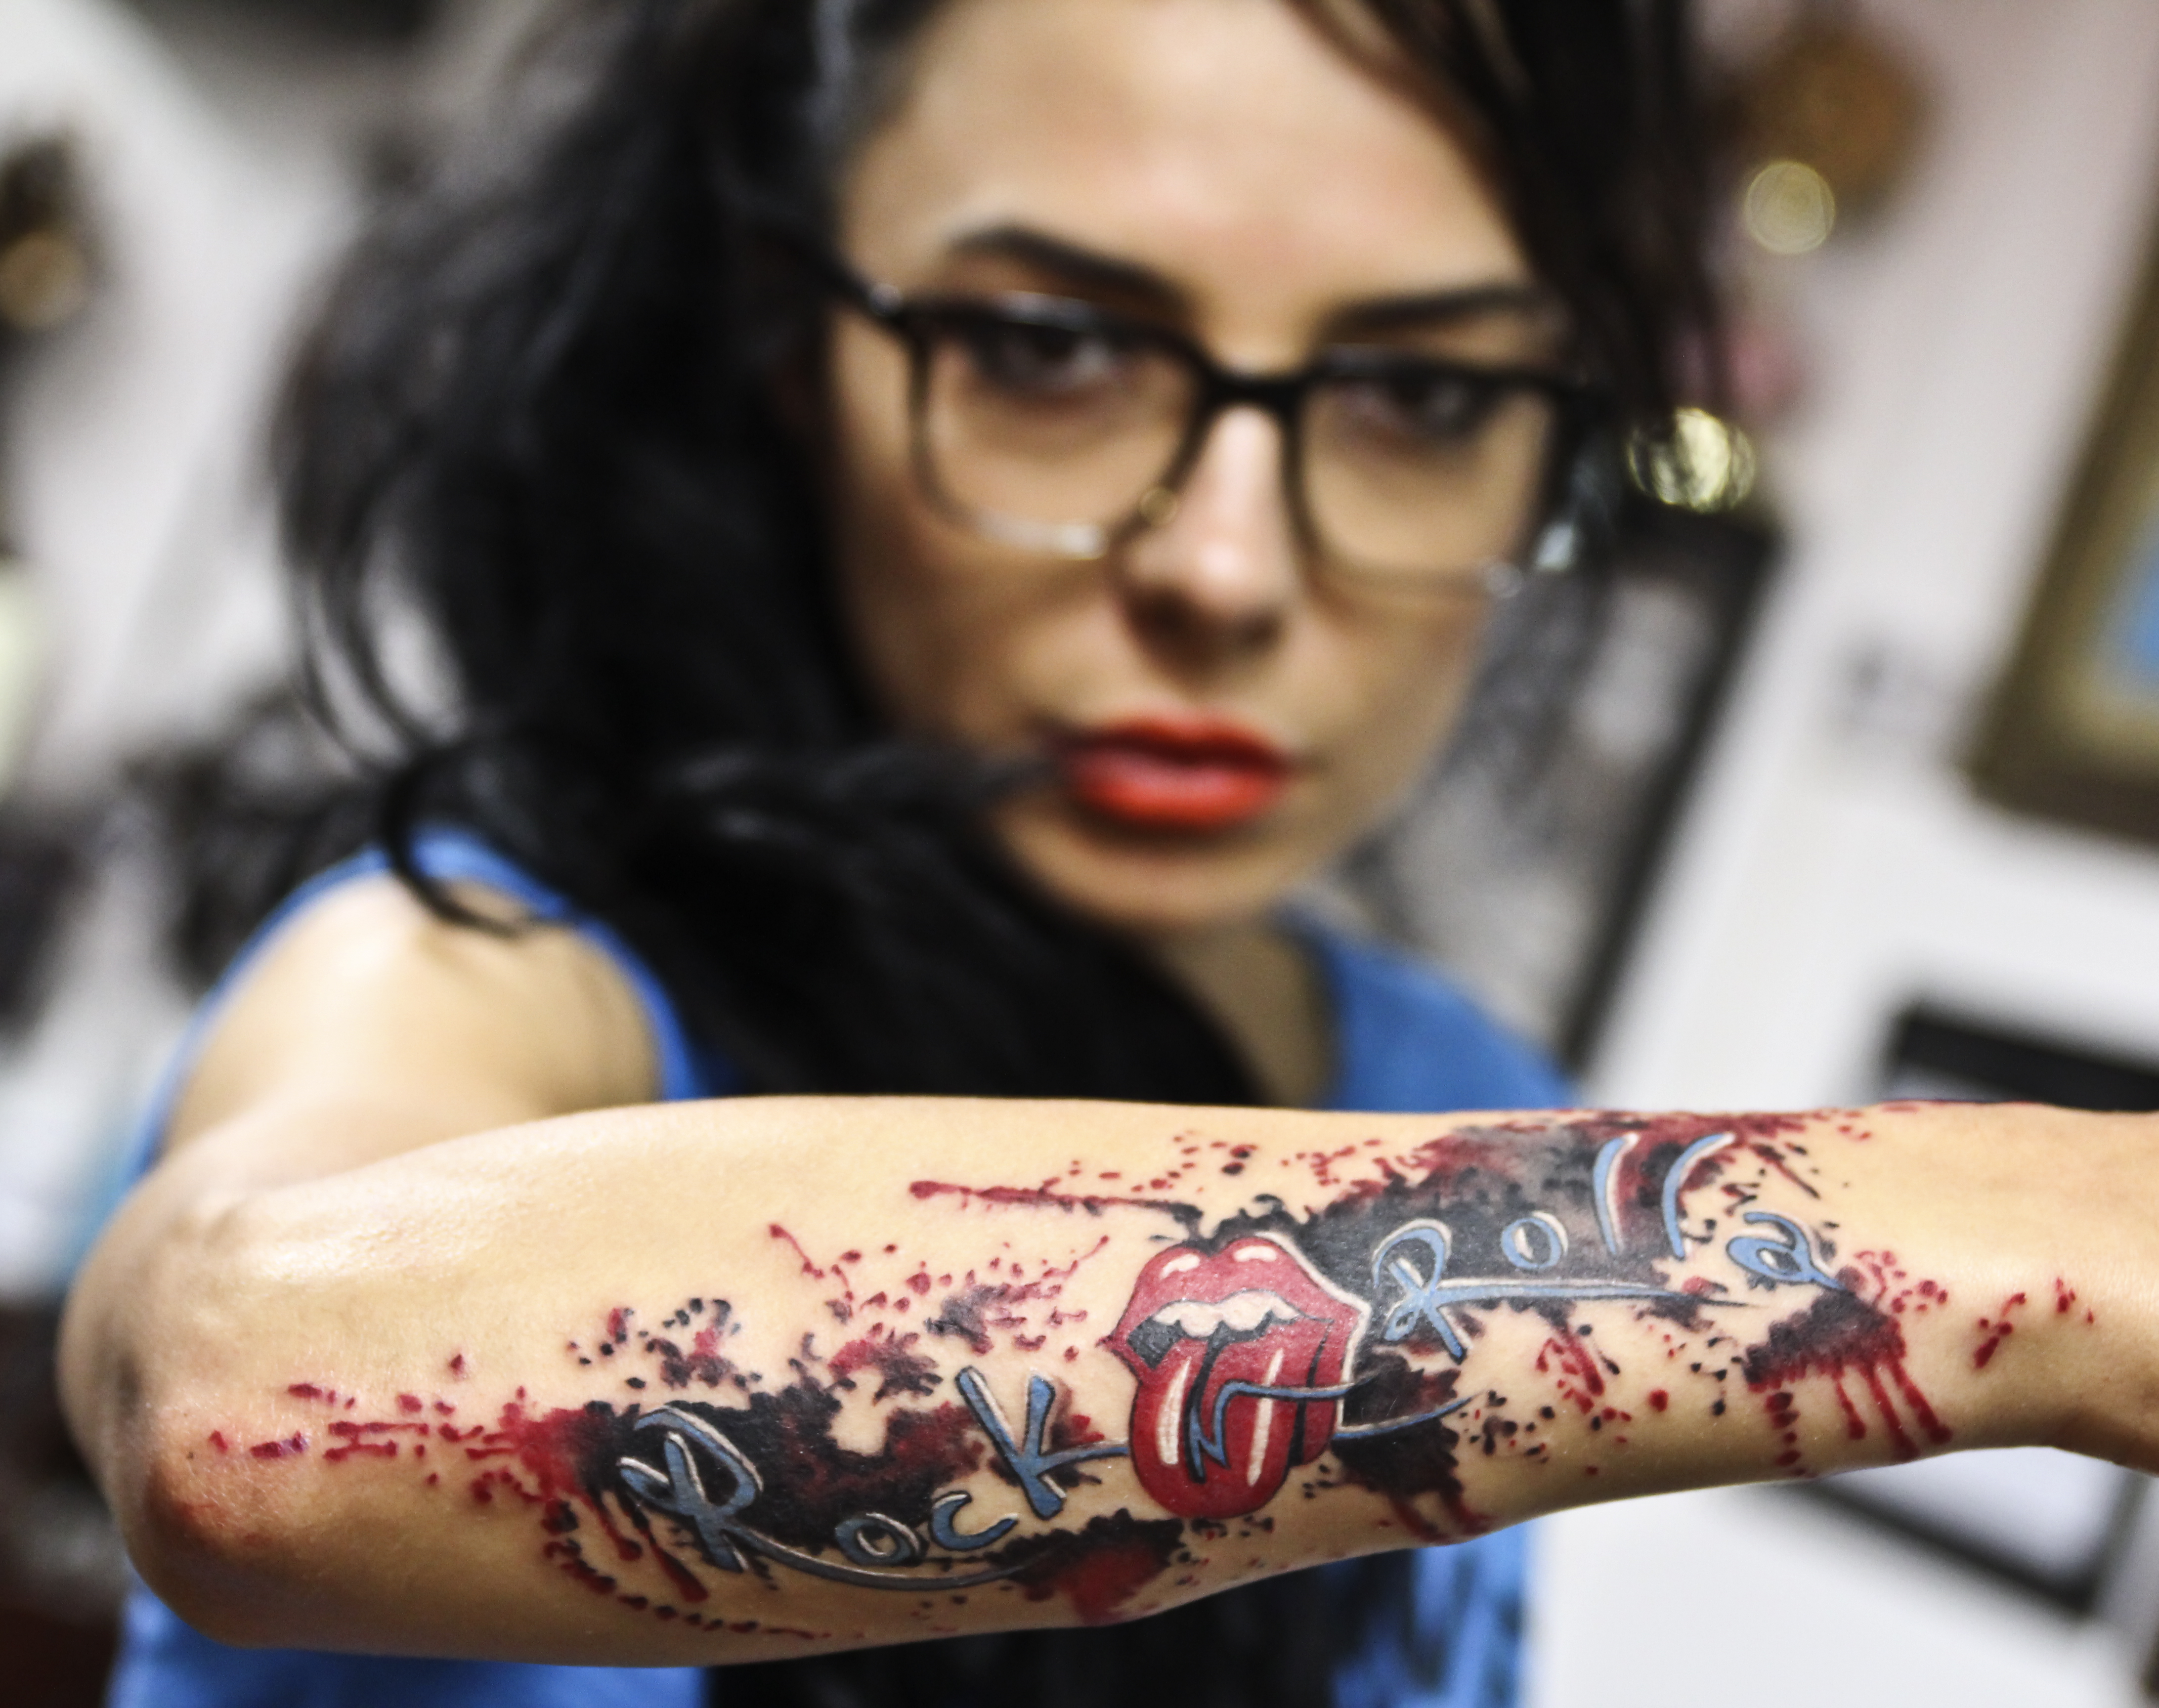 Vedeta va pleca in Los Angeles pentru a lua lectii de la cei mai mari artisti in domeniul tatuajelor